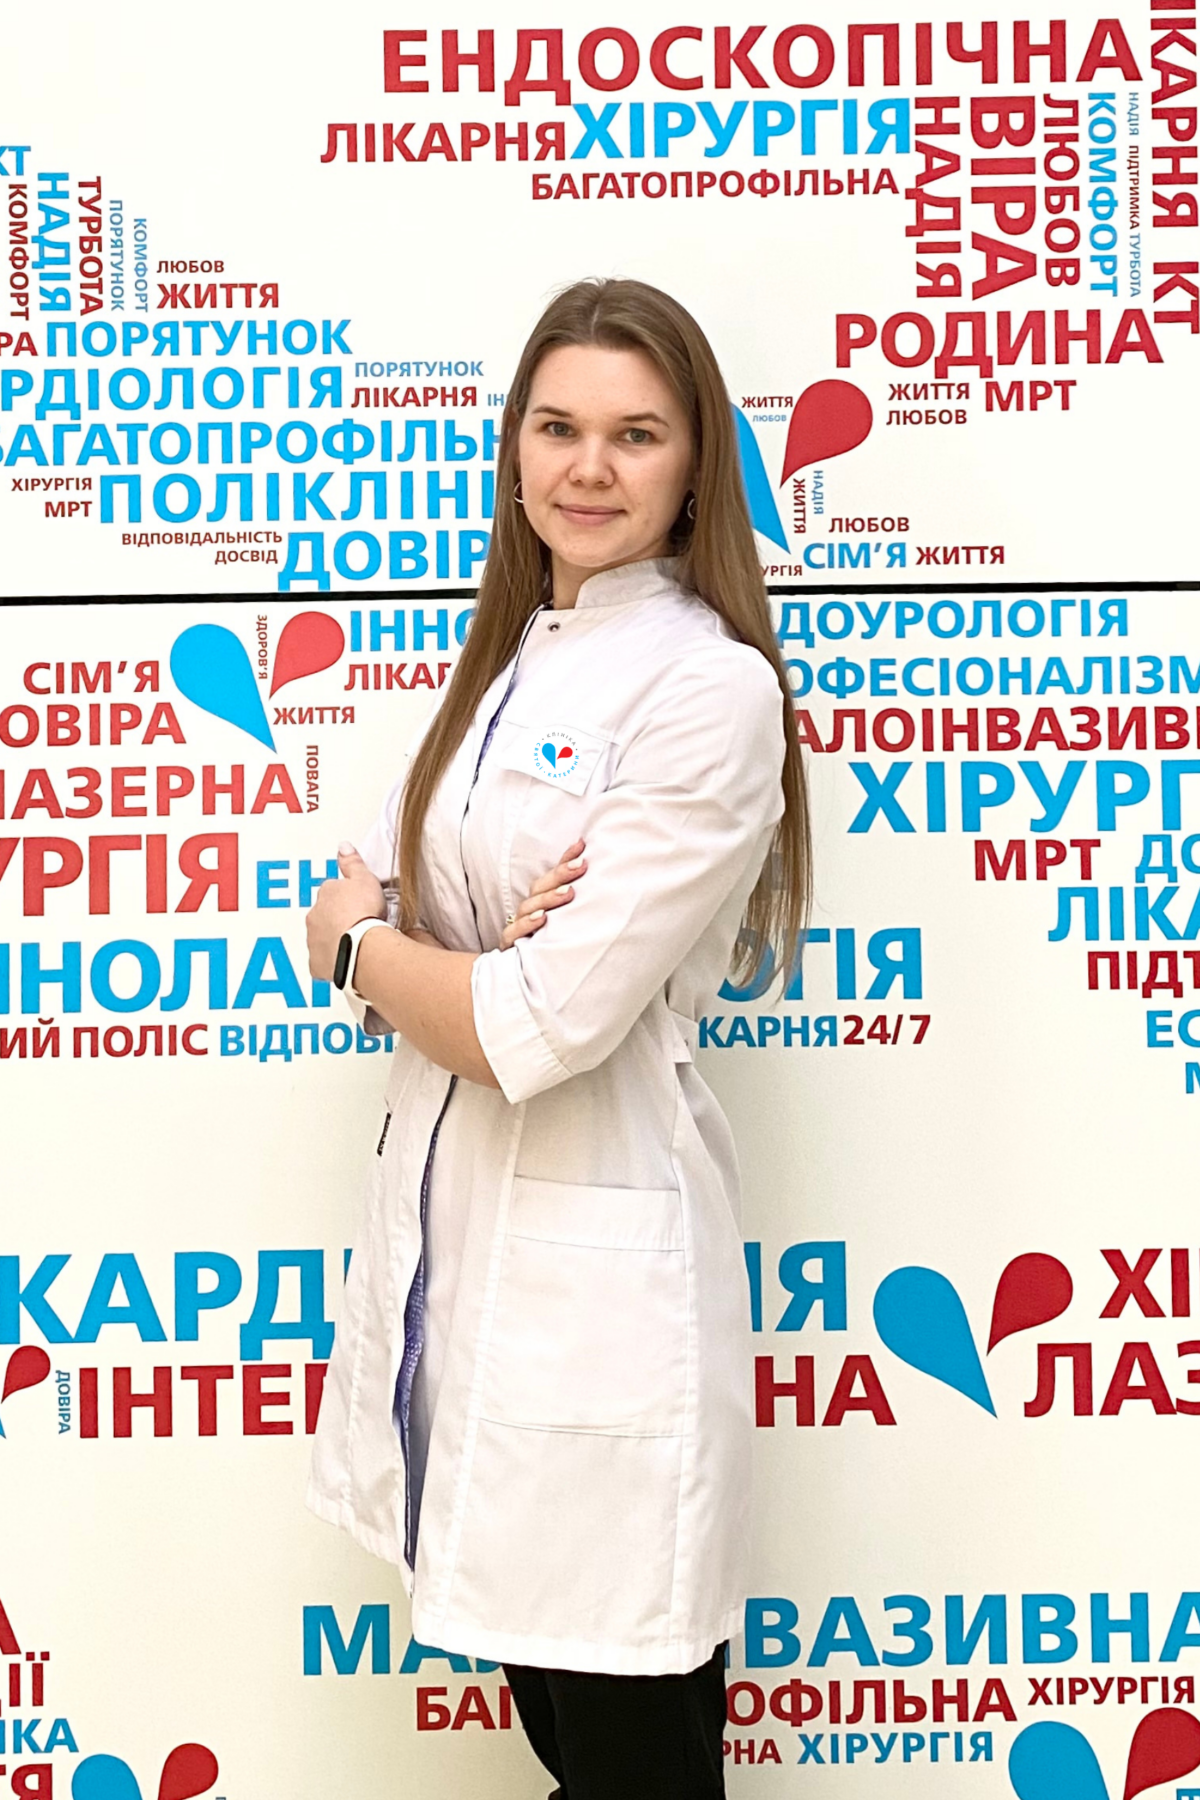 Миронова Олена Олександрівна - 19 - svekaterina.ua